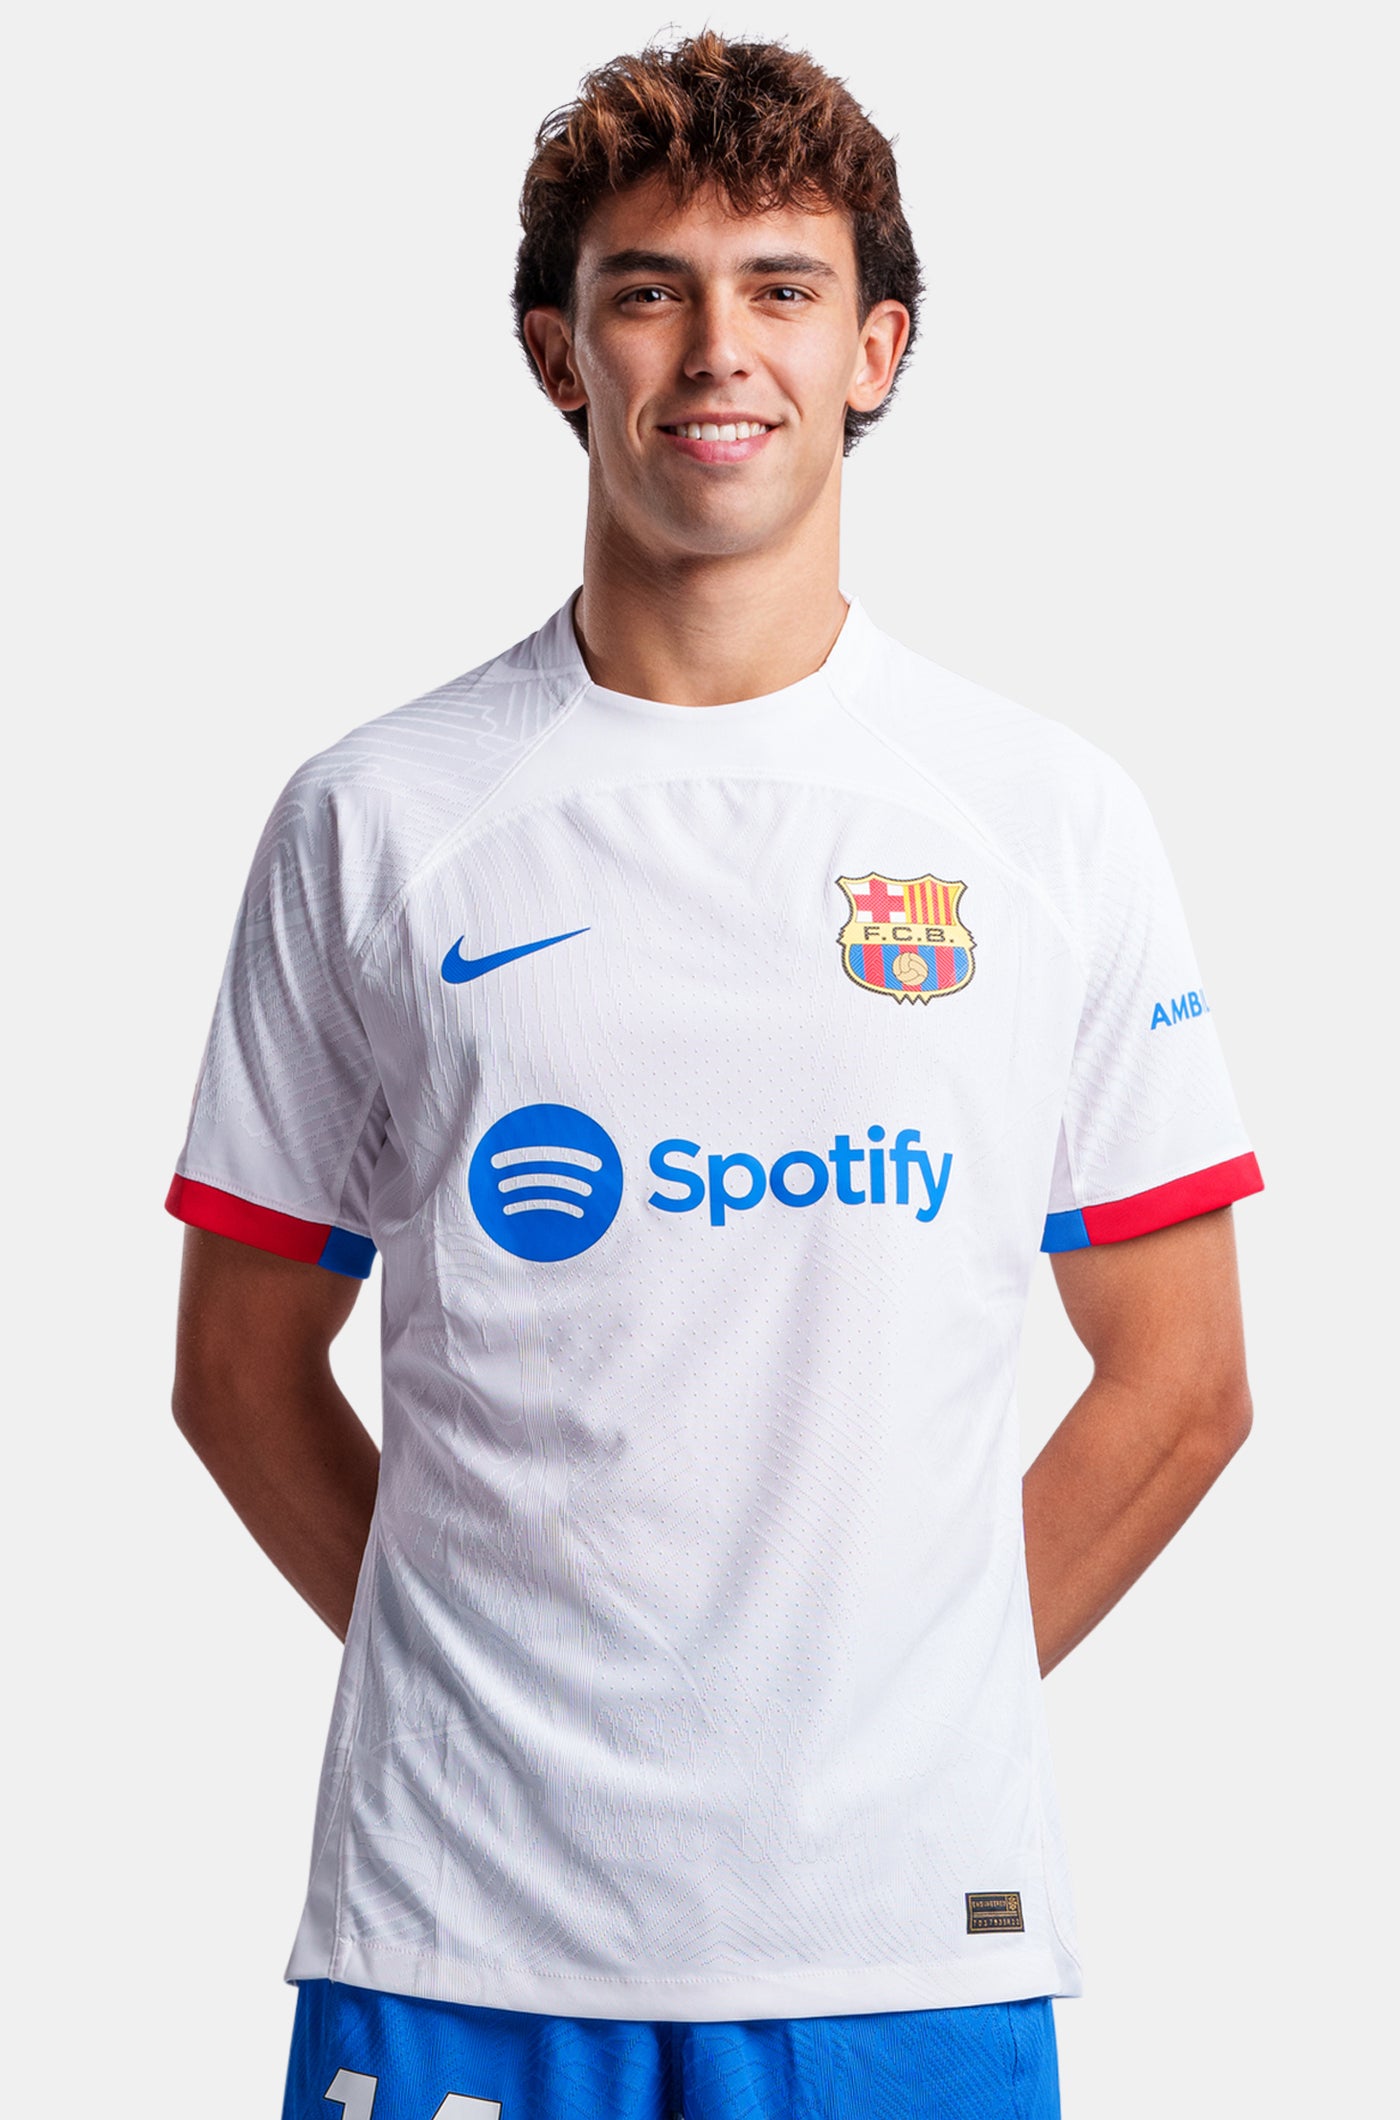 UCL FC Barcelona away shirt 23/24 Player’s Edition - JOÃO FELIX